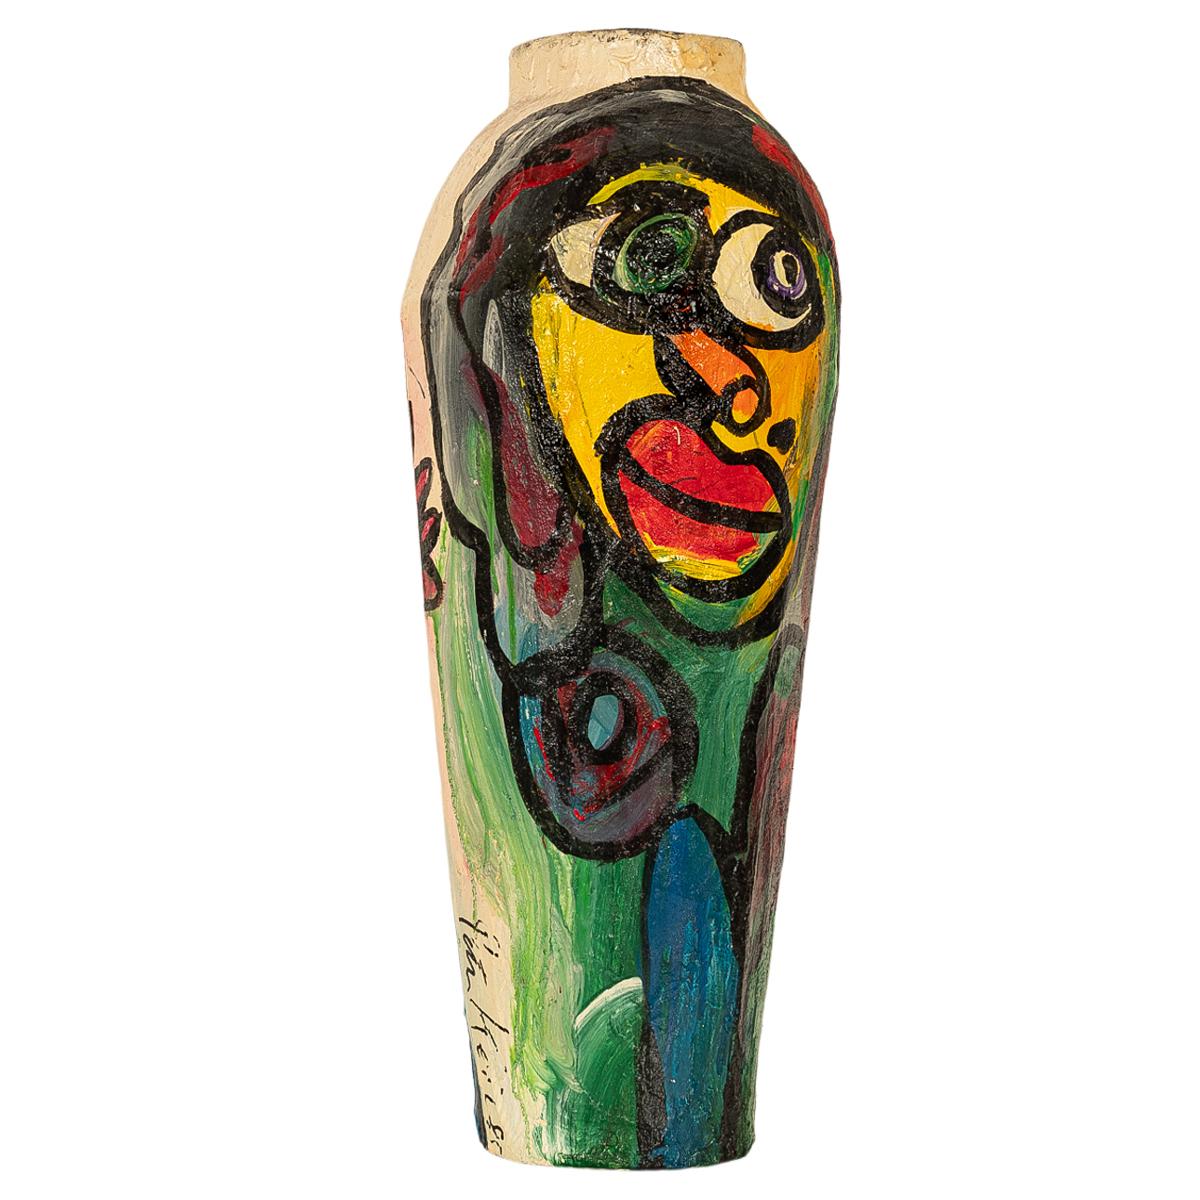 Un grand vase de sol en sculpture expressionniste abstraite du célèbre artiste expressionniste germano-américain Peter Robert Keil (né en 1942), signé et daté de 1985.
Le vase de sol est de grande taille et créé en papier mâché. Il présente une